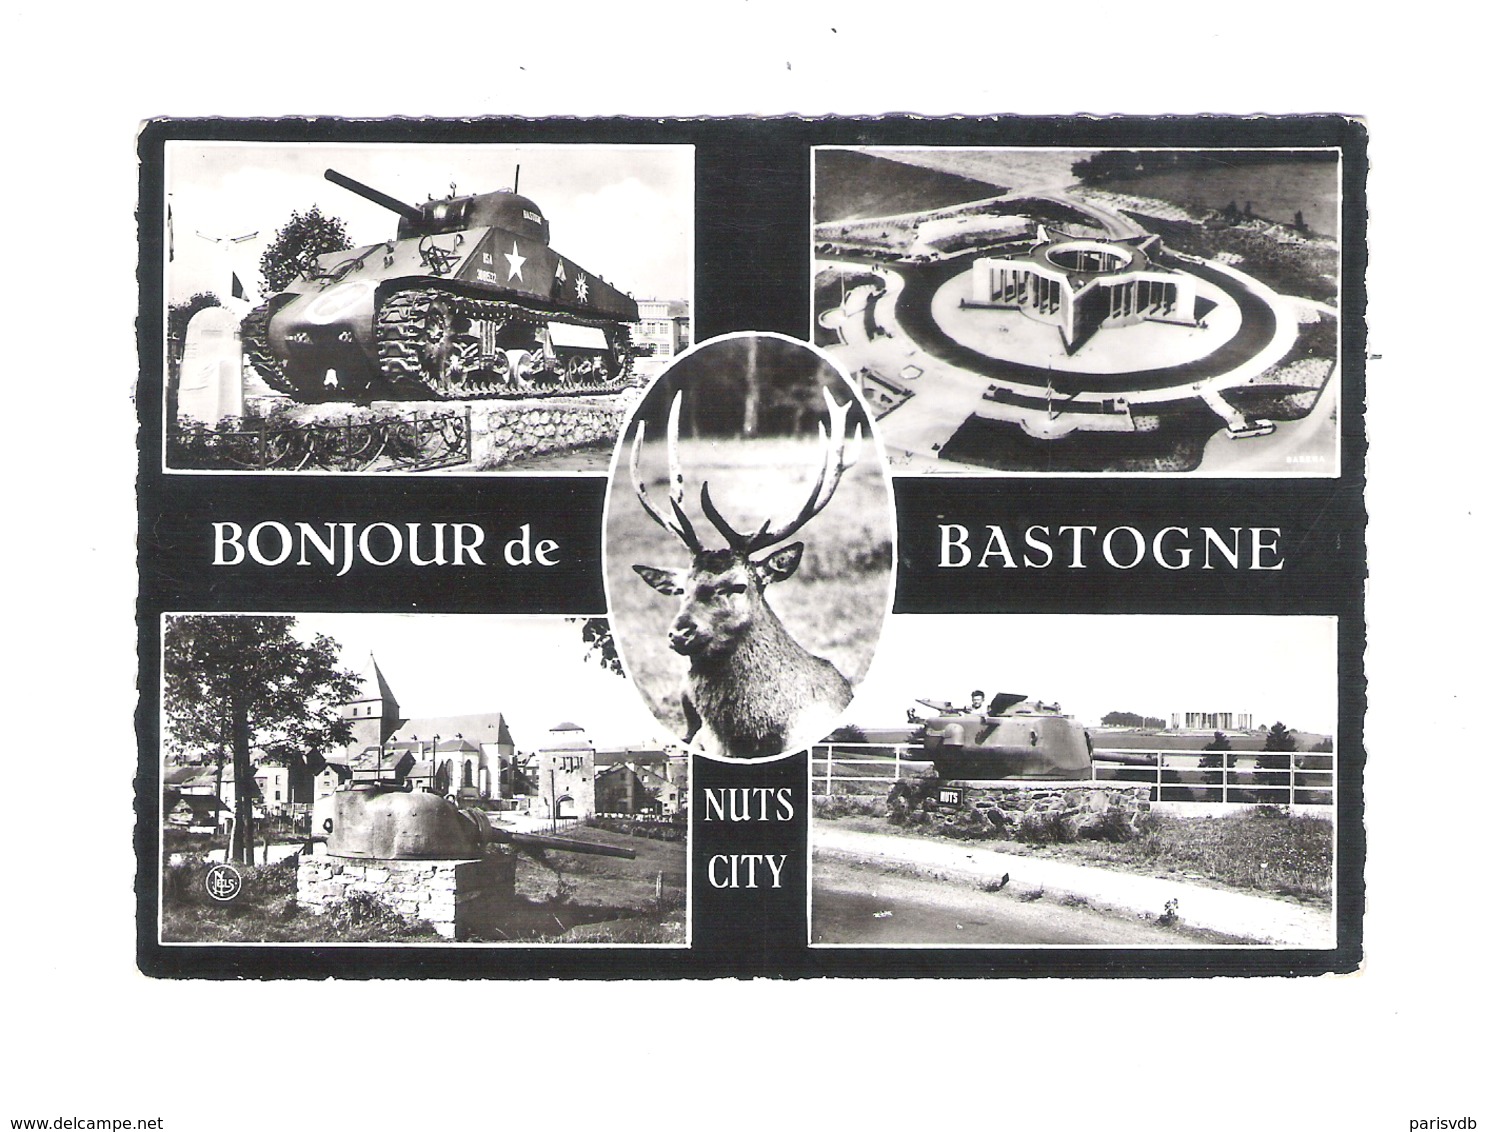 BASTOGNE - BONJOUR DE BASTOGNE - NUTS CITY - NELS   (8143) - Bastogne